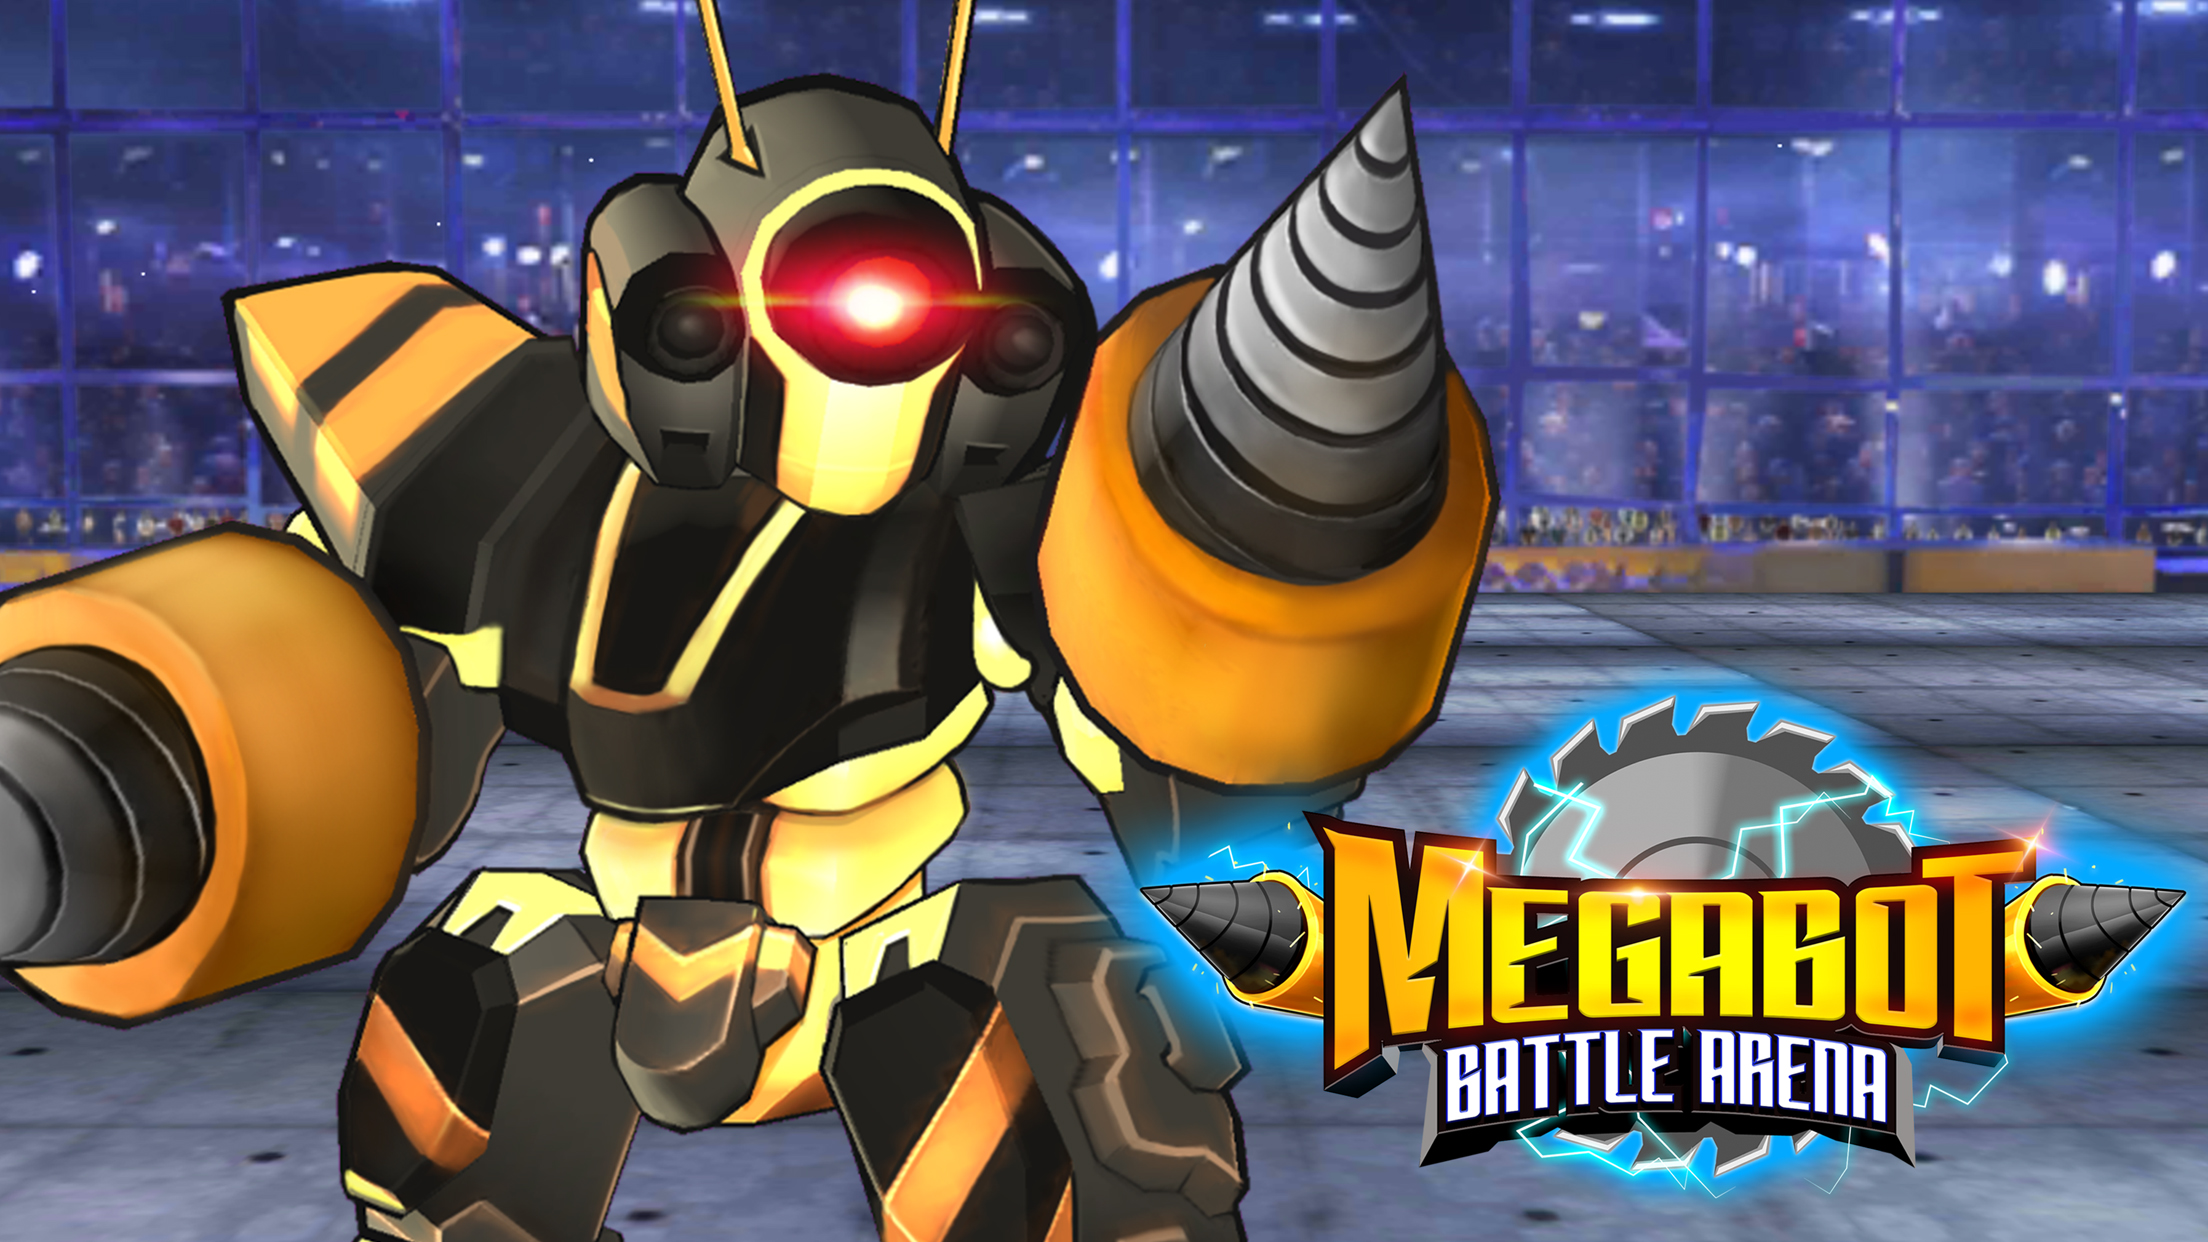 Download Megabot: